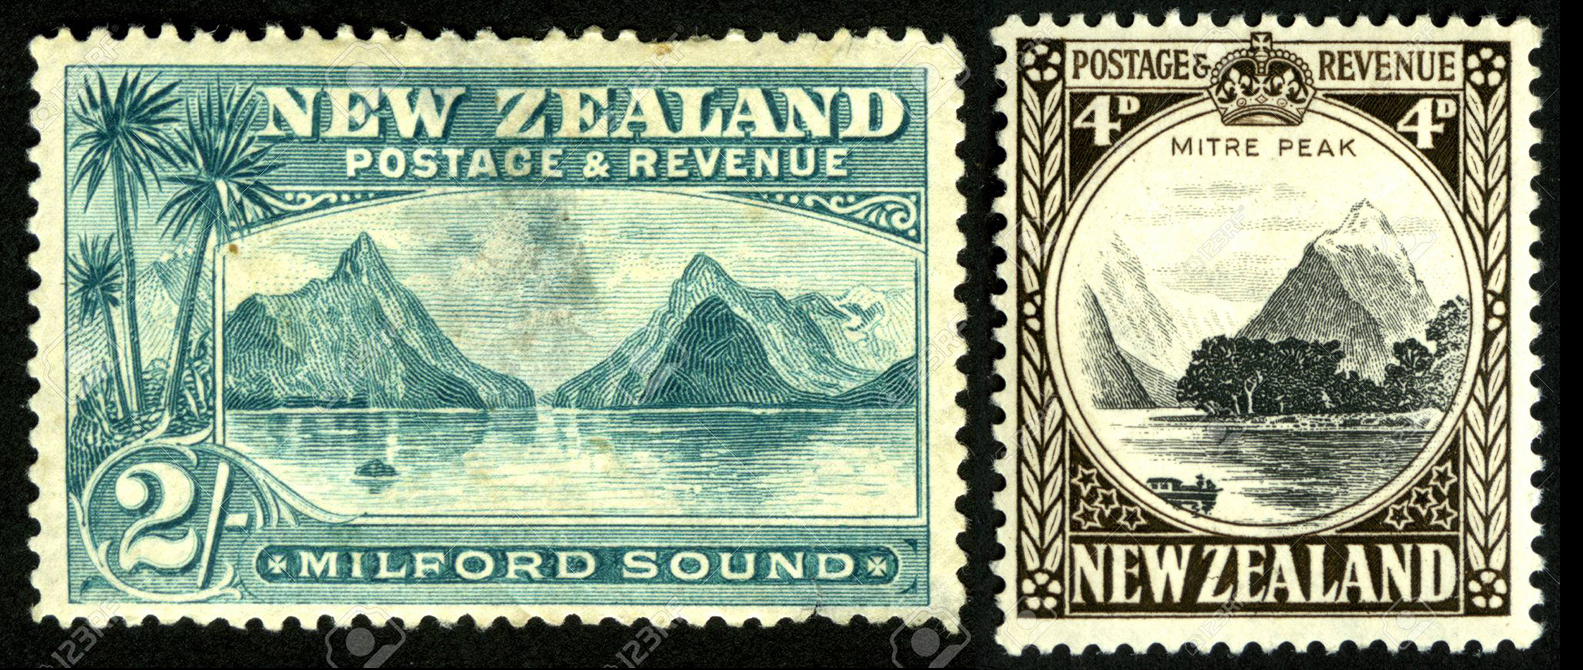 La Nouvelle-Zélande a rendu deux hommages philatéliques à ce site exceptionnel de sa côte sud-ouest.